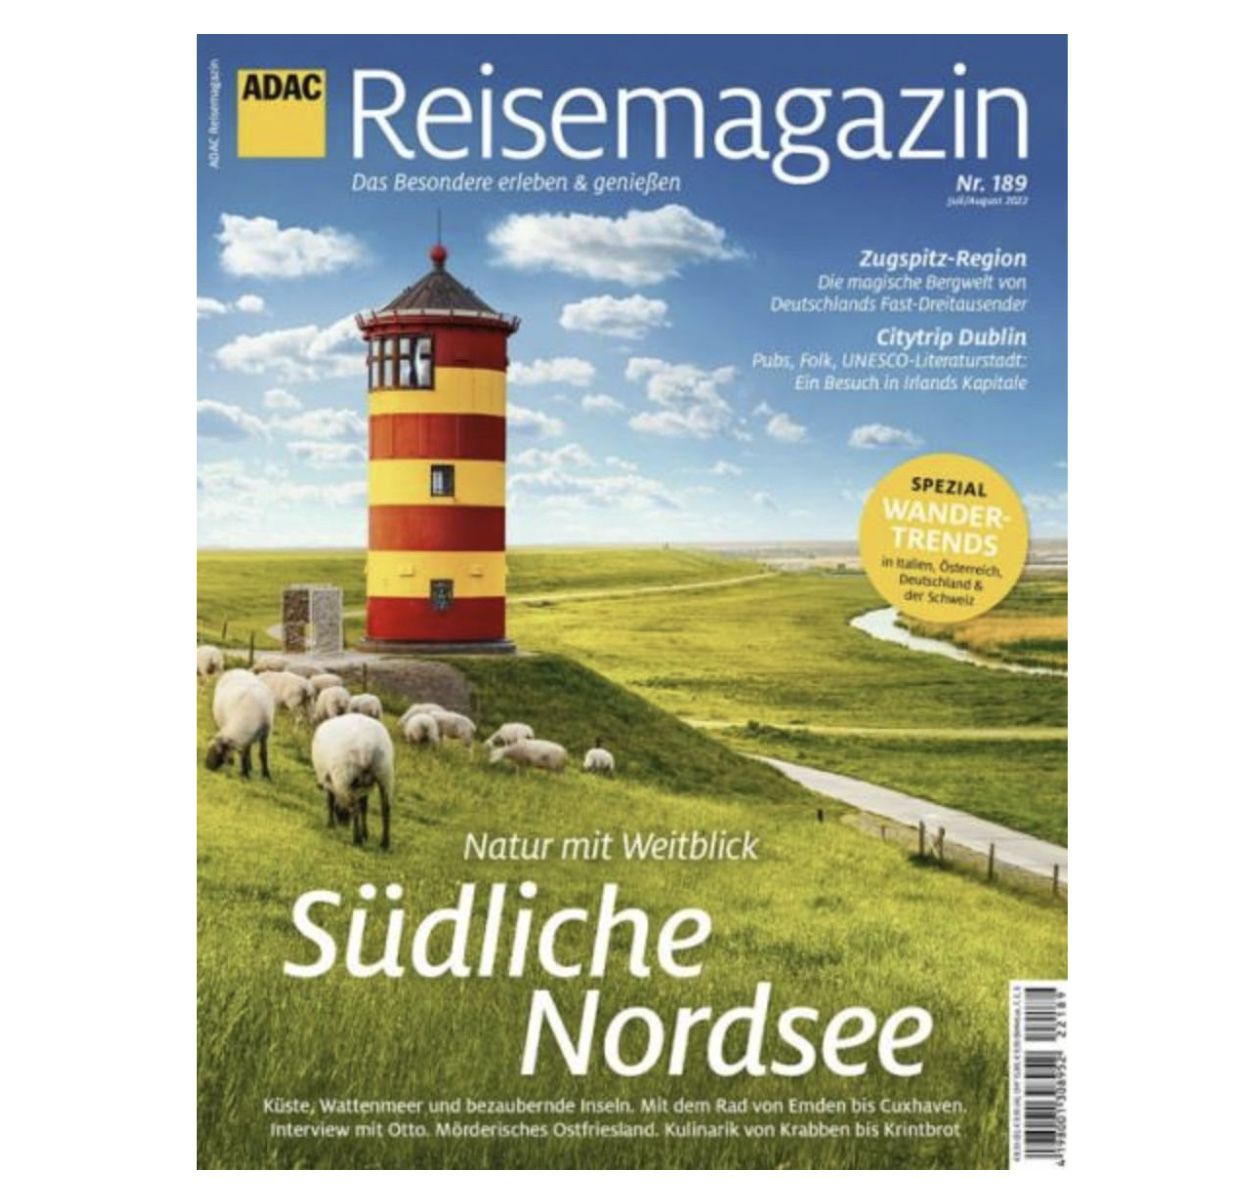 7 Ausgaben ADAC Reisemagazin für 61,15€ + Prämie: 50€ Gutschein